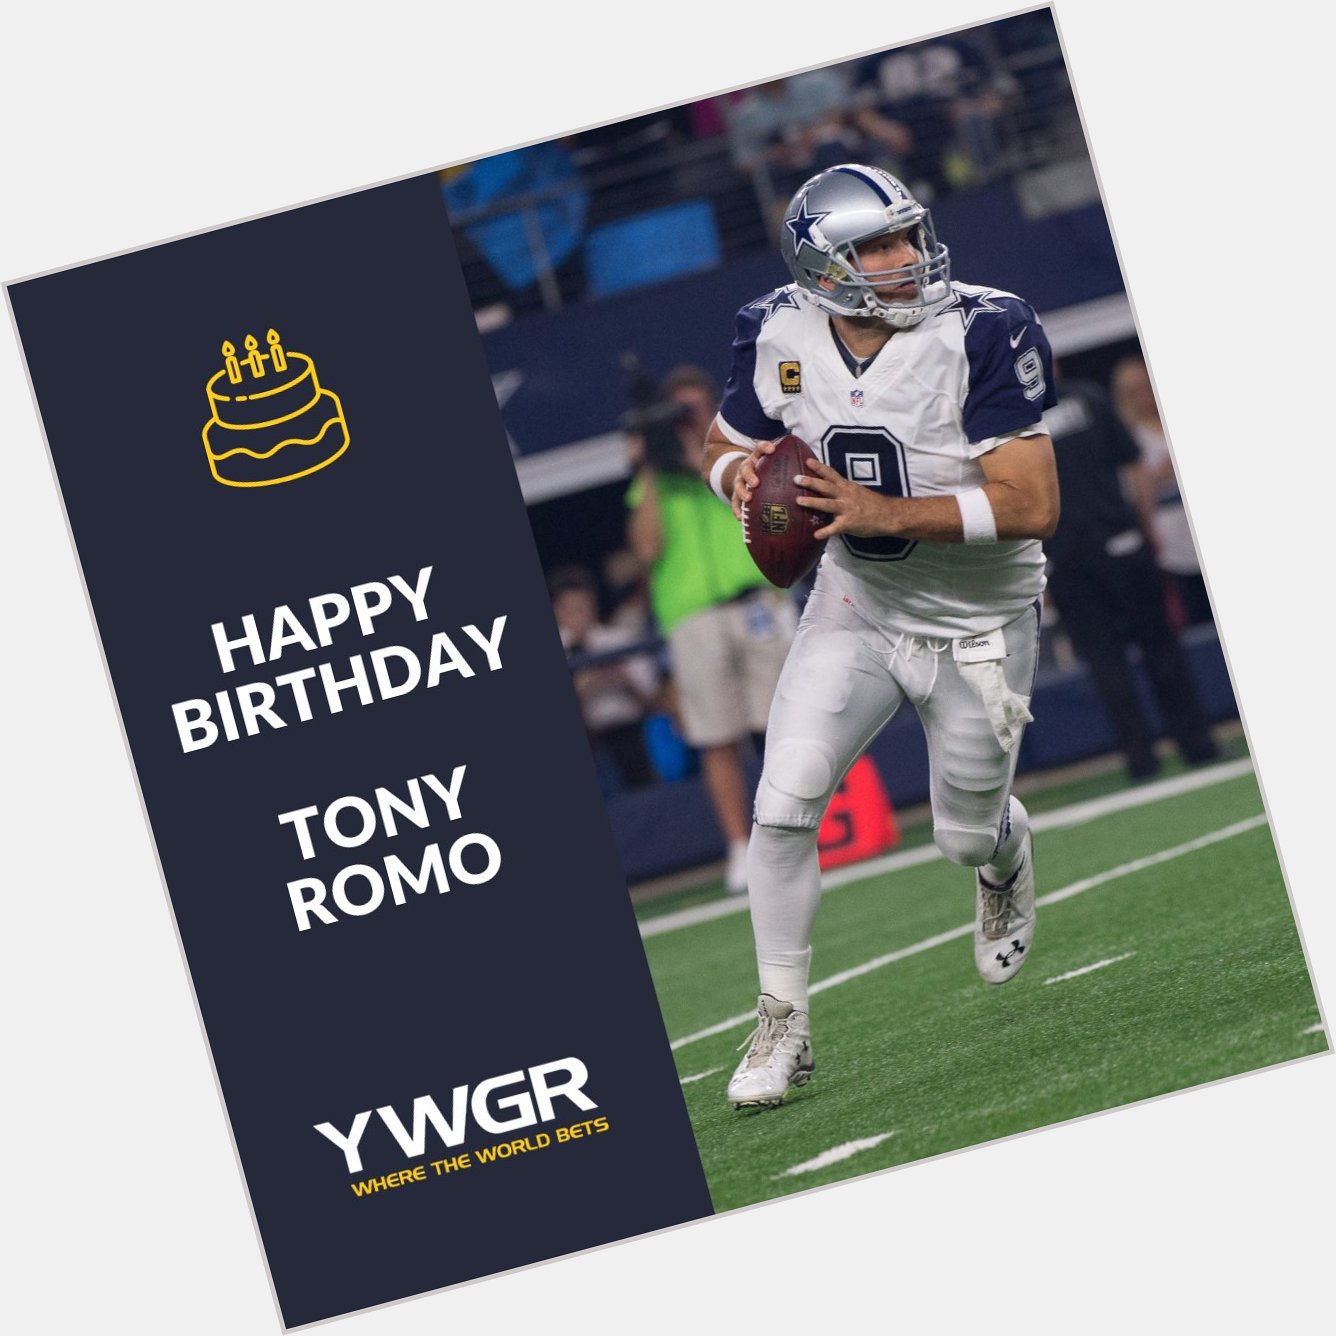 Happy birthday Tony ROMO!! 